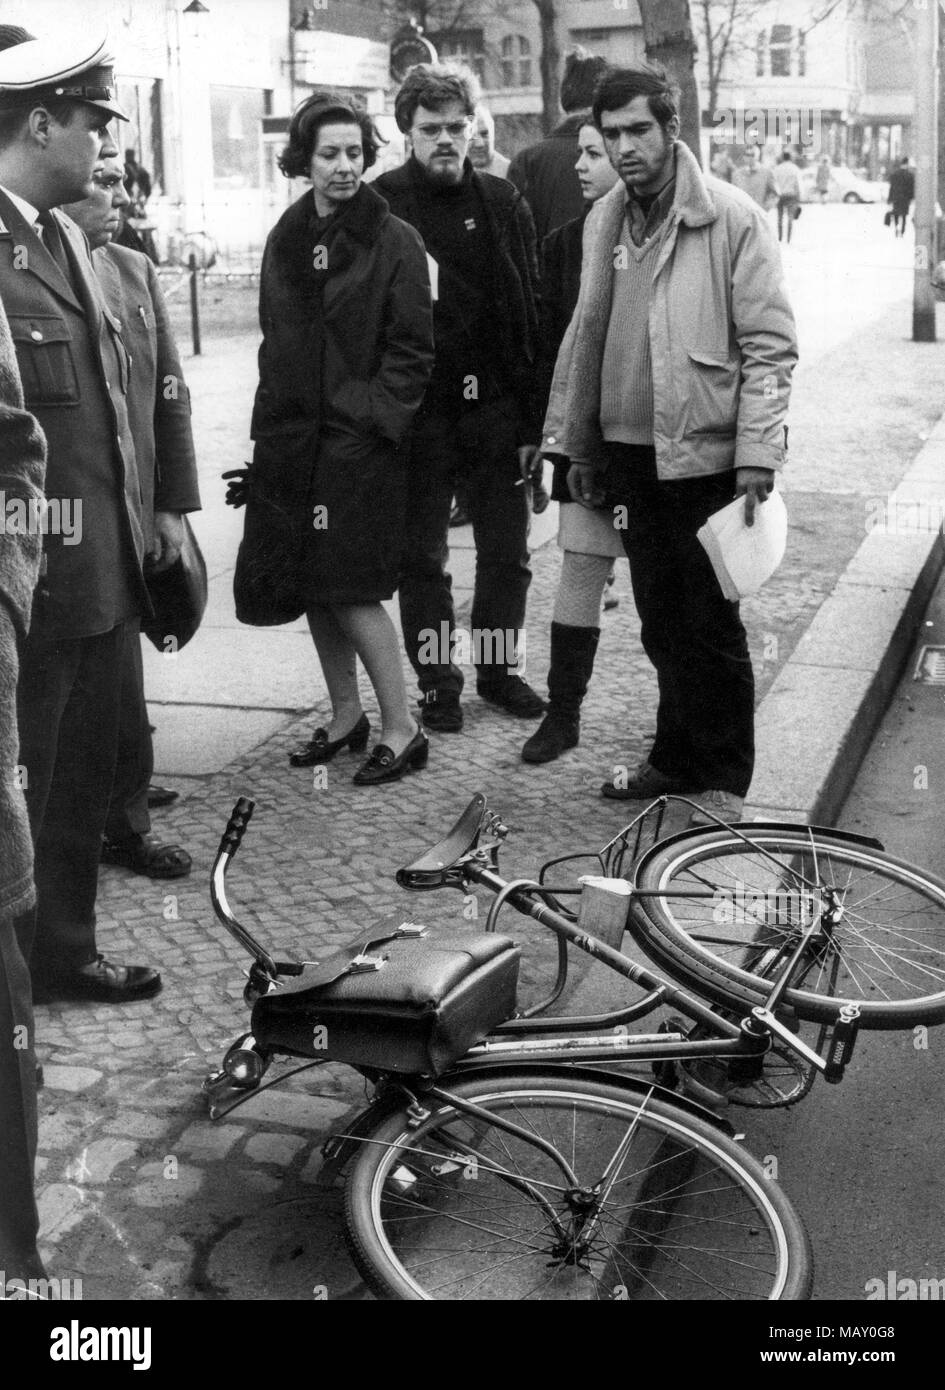 La location de Rudi Dutschke sur les lieux. Rudi Dutschke - porte-parole du mouvement étudiant allemand - a reçu une balle dans la tête le 11 avril 1968 sur Kurfuerstendamm à Berlin par antii-communiste Josef Erwin Bachmann. Dutschke a survécu à la tentative. Dans le monde d'utilisation | Banque D'Images